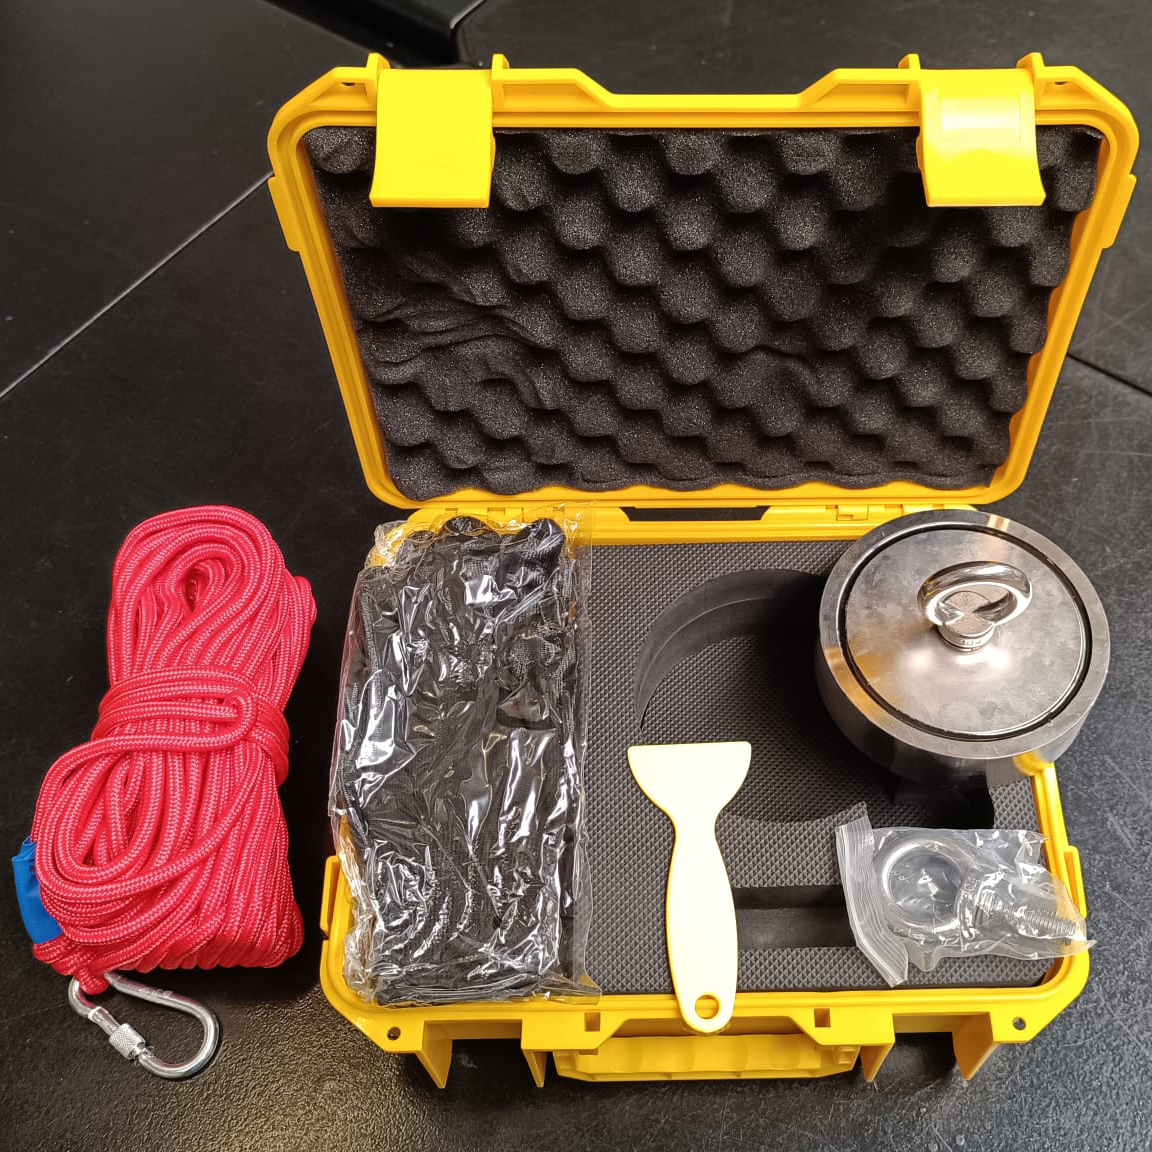 Bulldog-Magnet 13,5 x 3,5 cm mit 20 m Seil, Koffer und Handschuhe